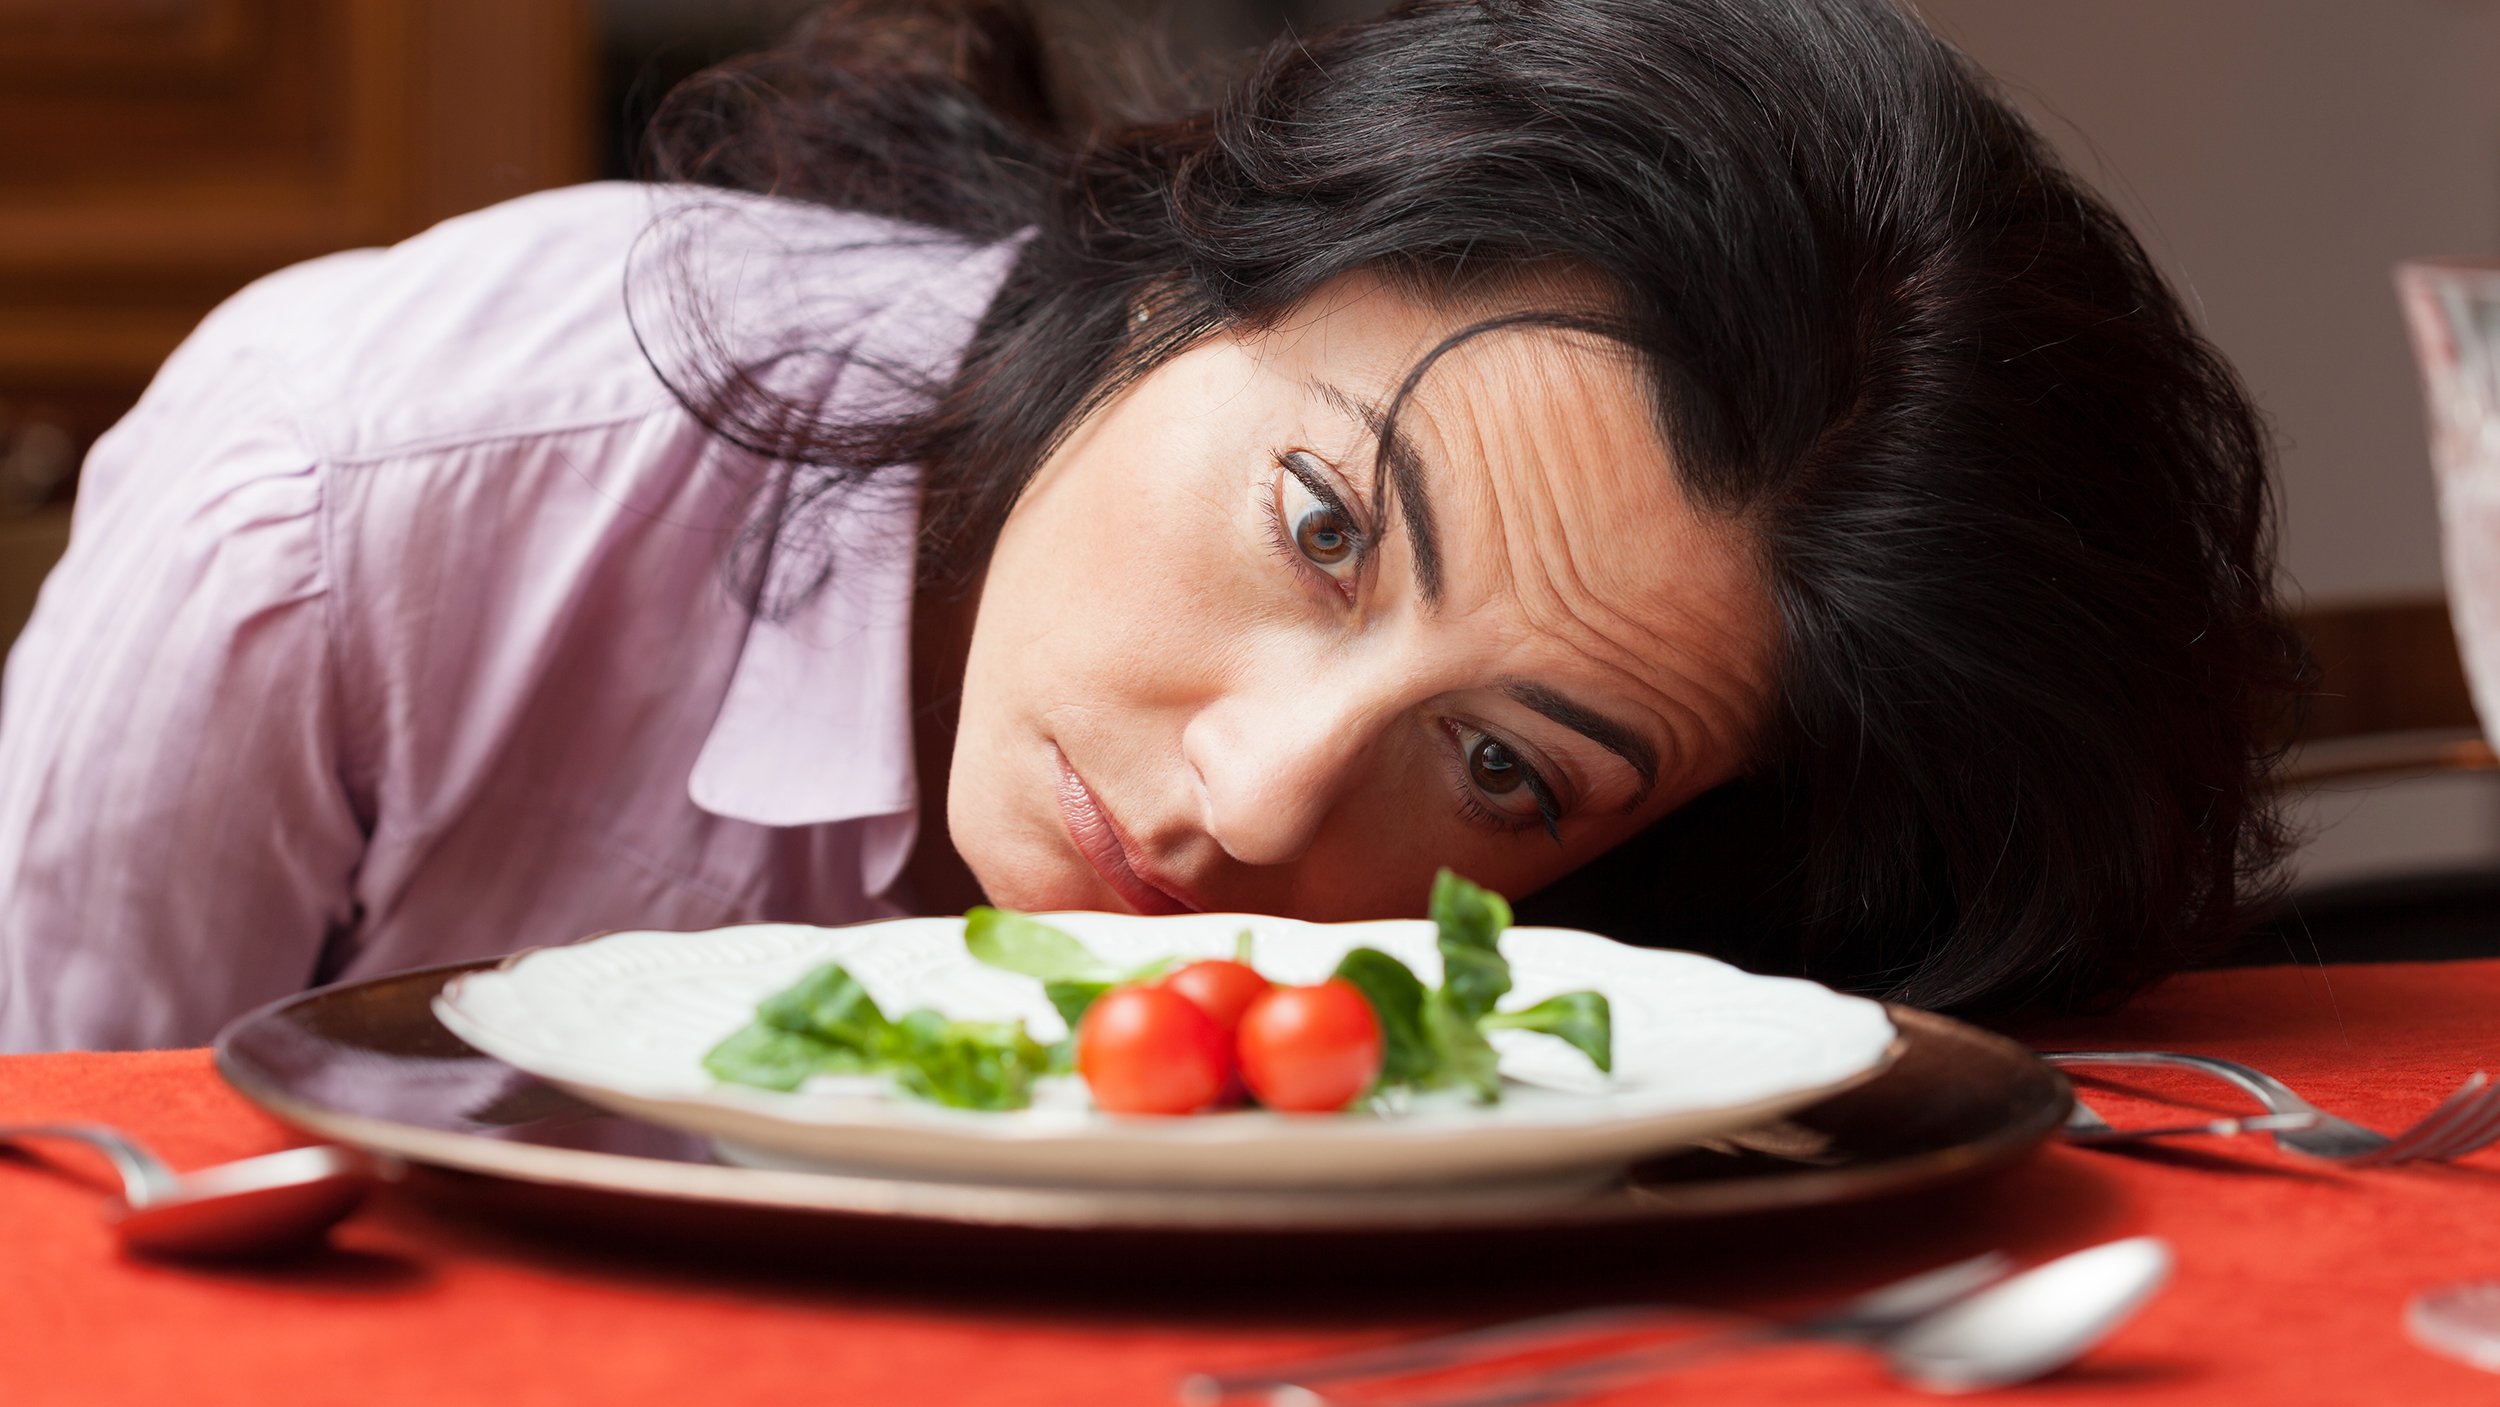 gejala orthorexia nevosa - obsesi makan sehat